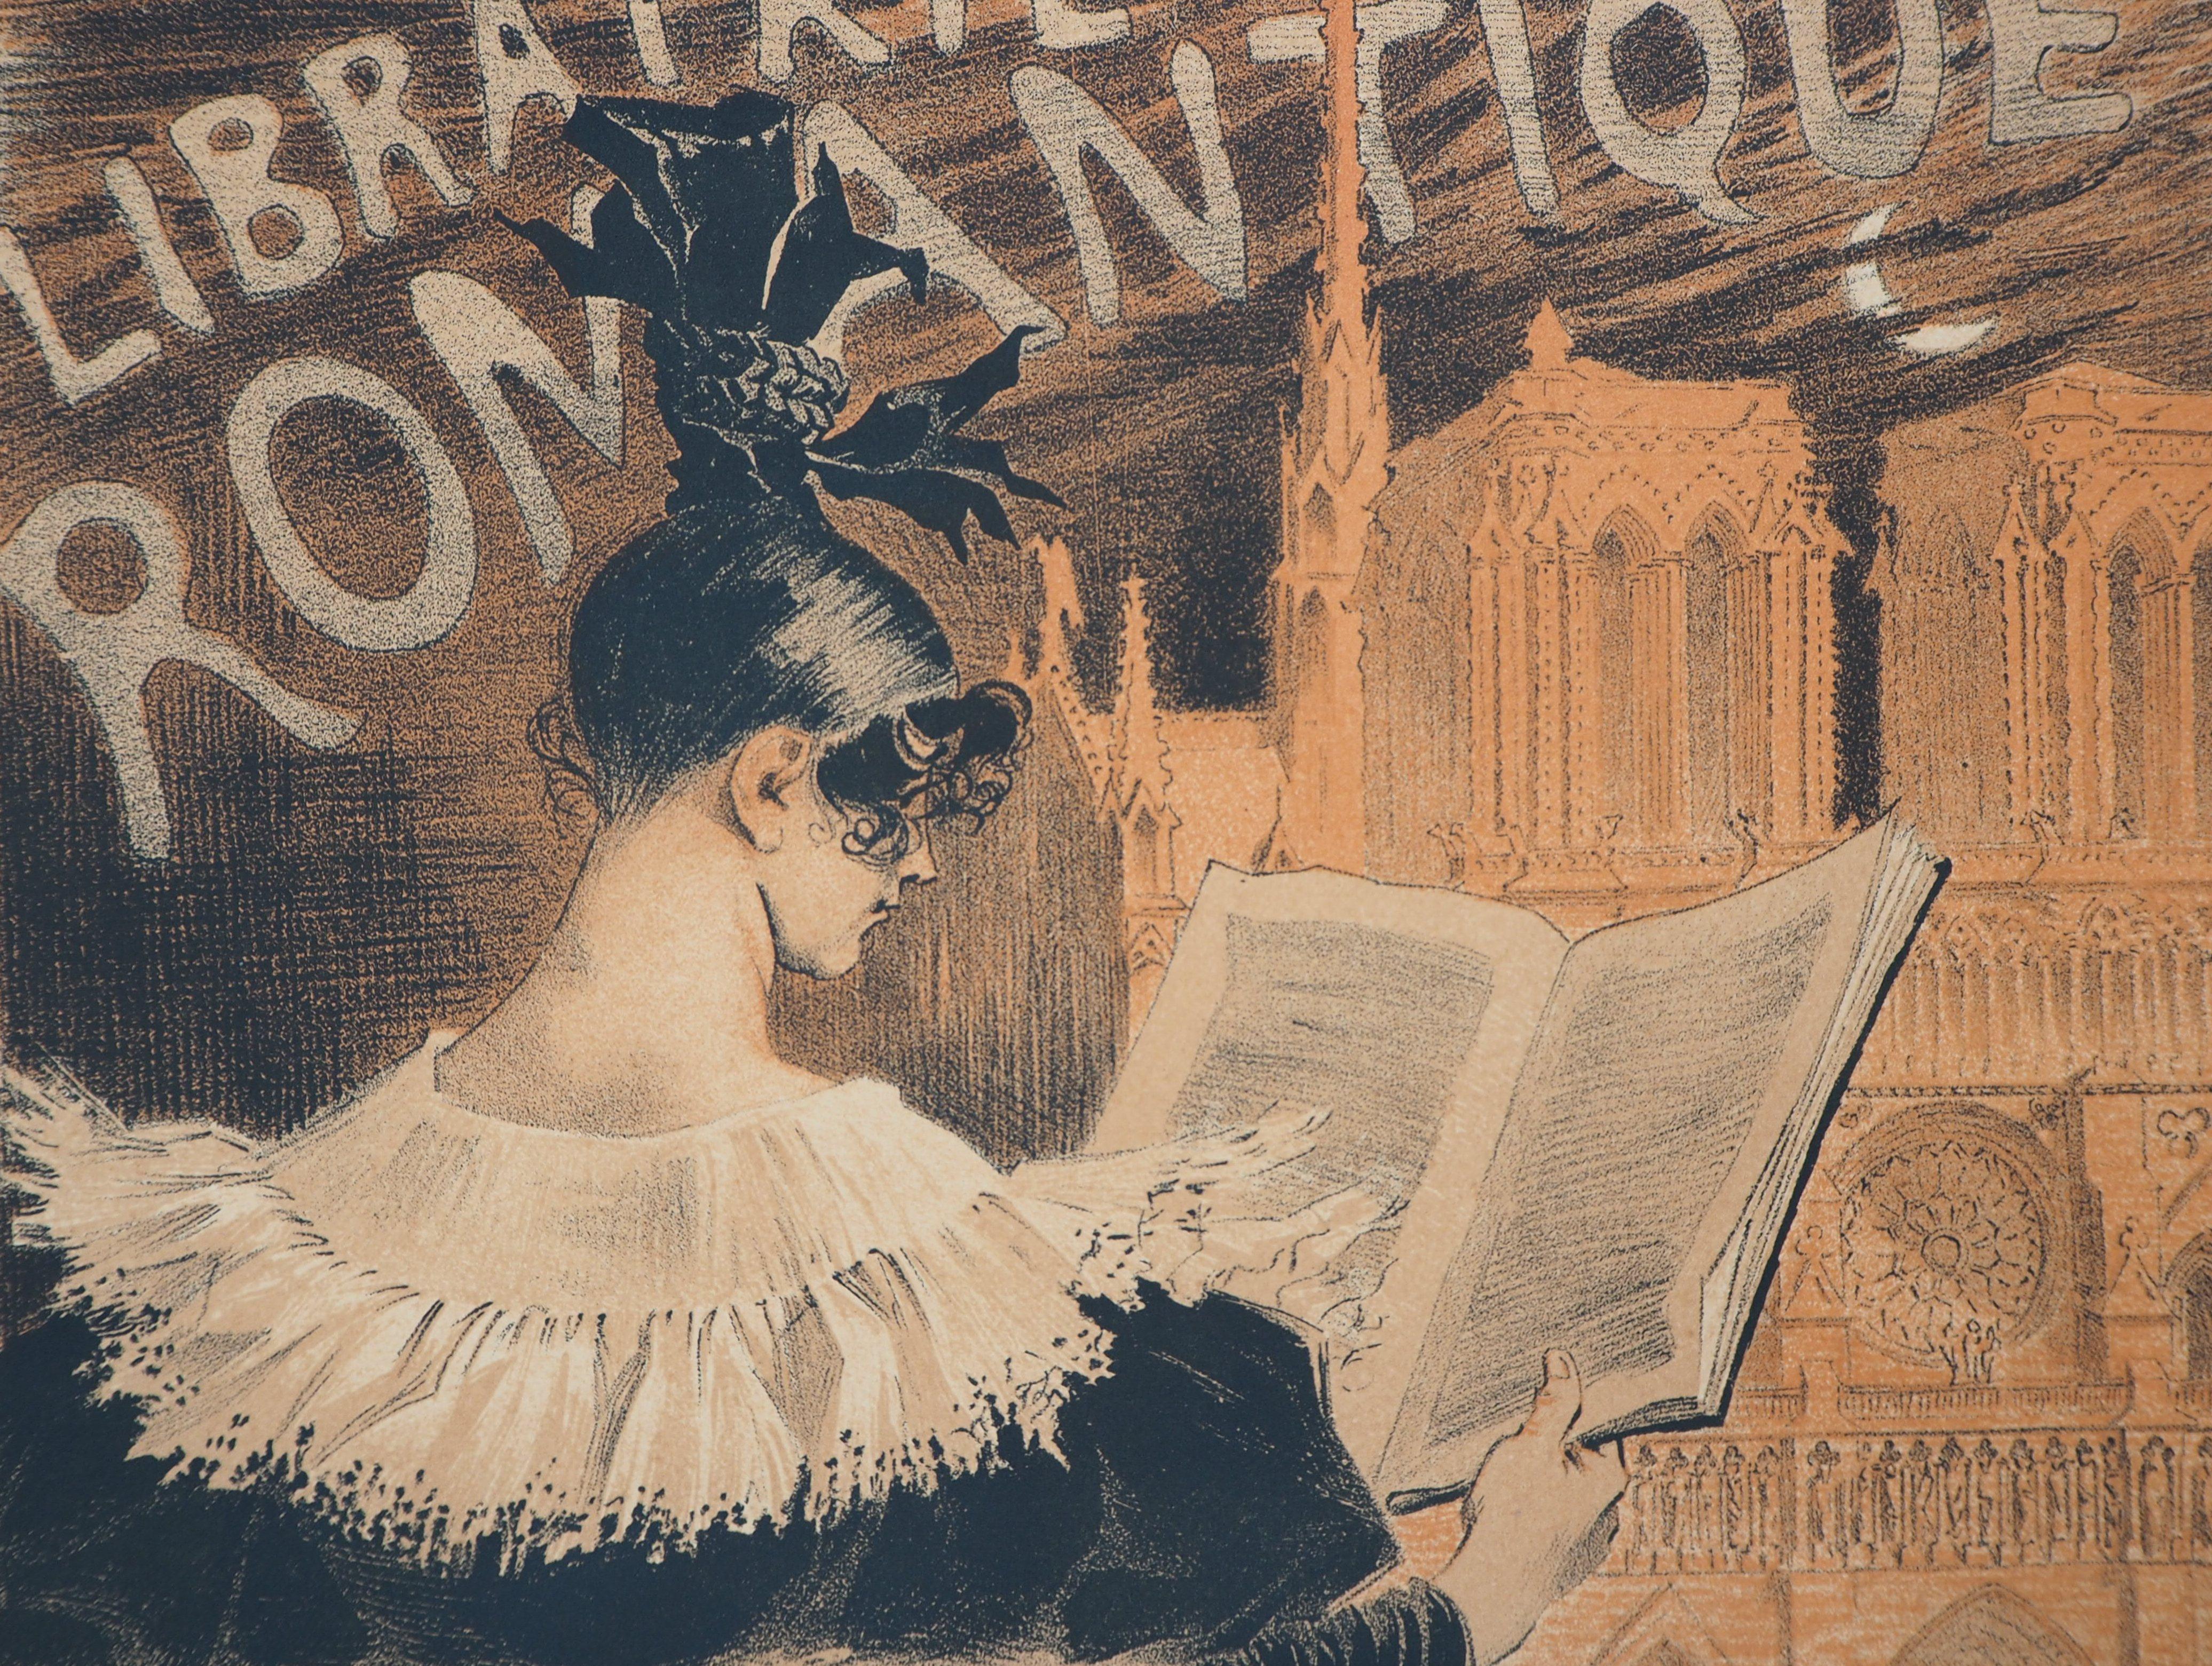 Eugene GRASSET (1845 - 1917)
The Reader and Notre-Dame de Paris (Librairie Romantique)

Stone lithograph
On vellum 
Size 40 x 29 cm (c. 15.7 x 11.4